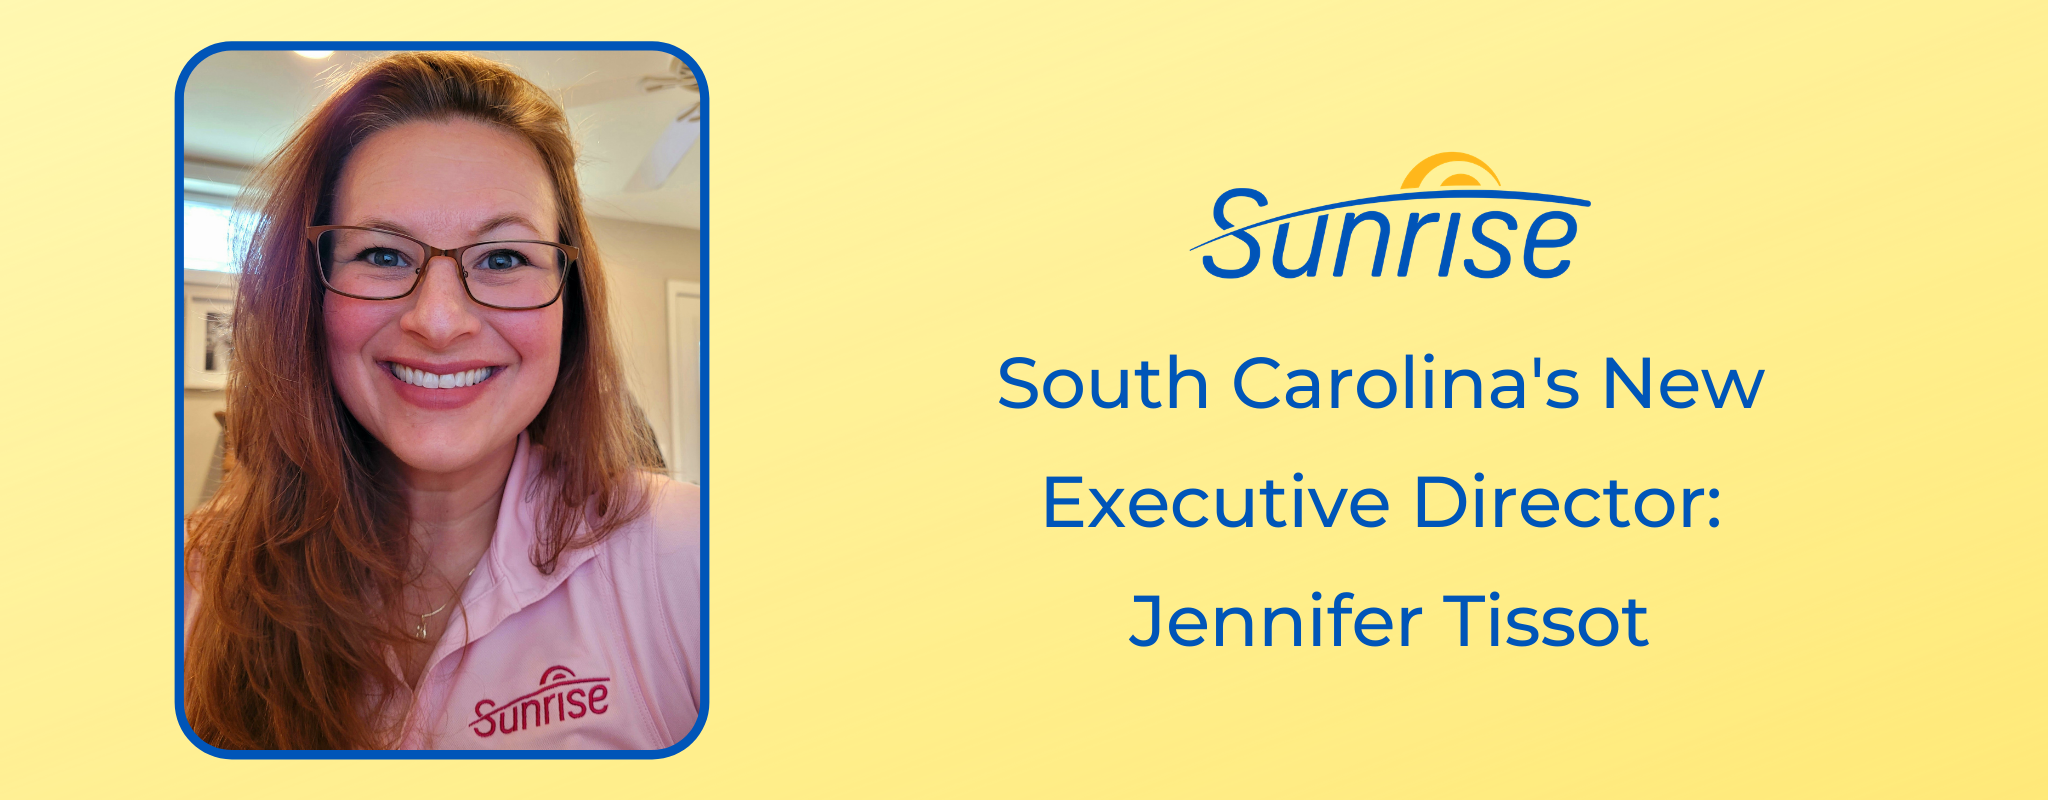 Giám đốc điều hành mới của Nam Carolina: Jennifer Tissot